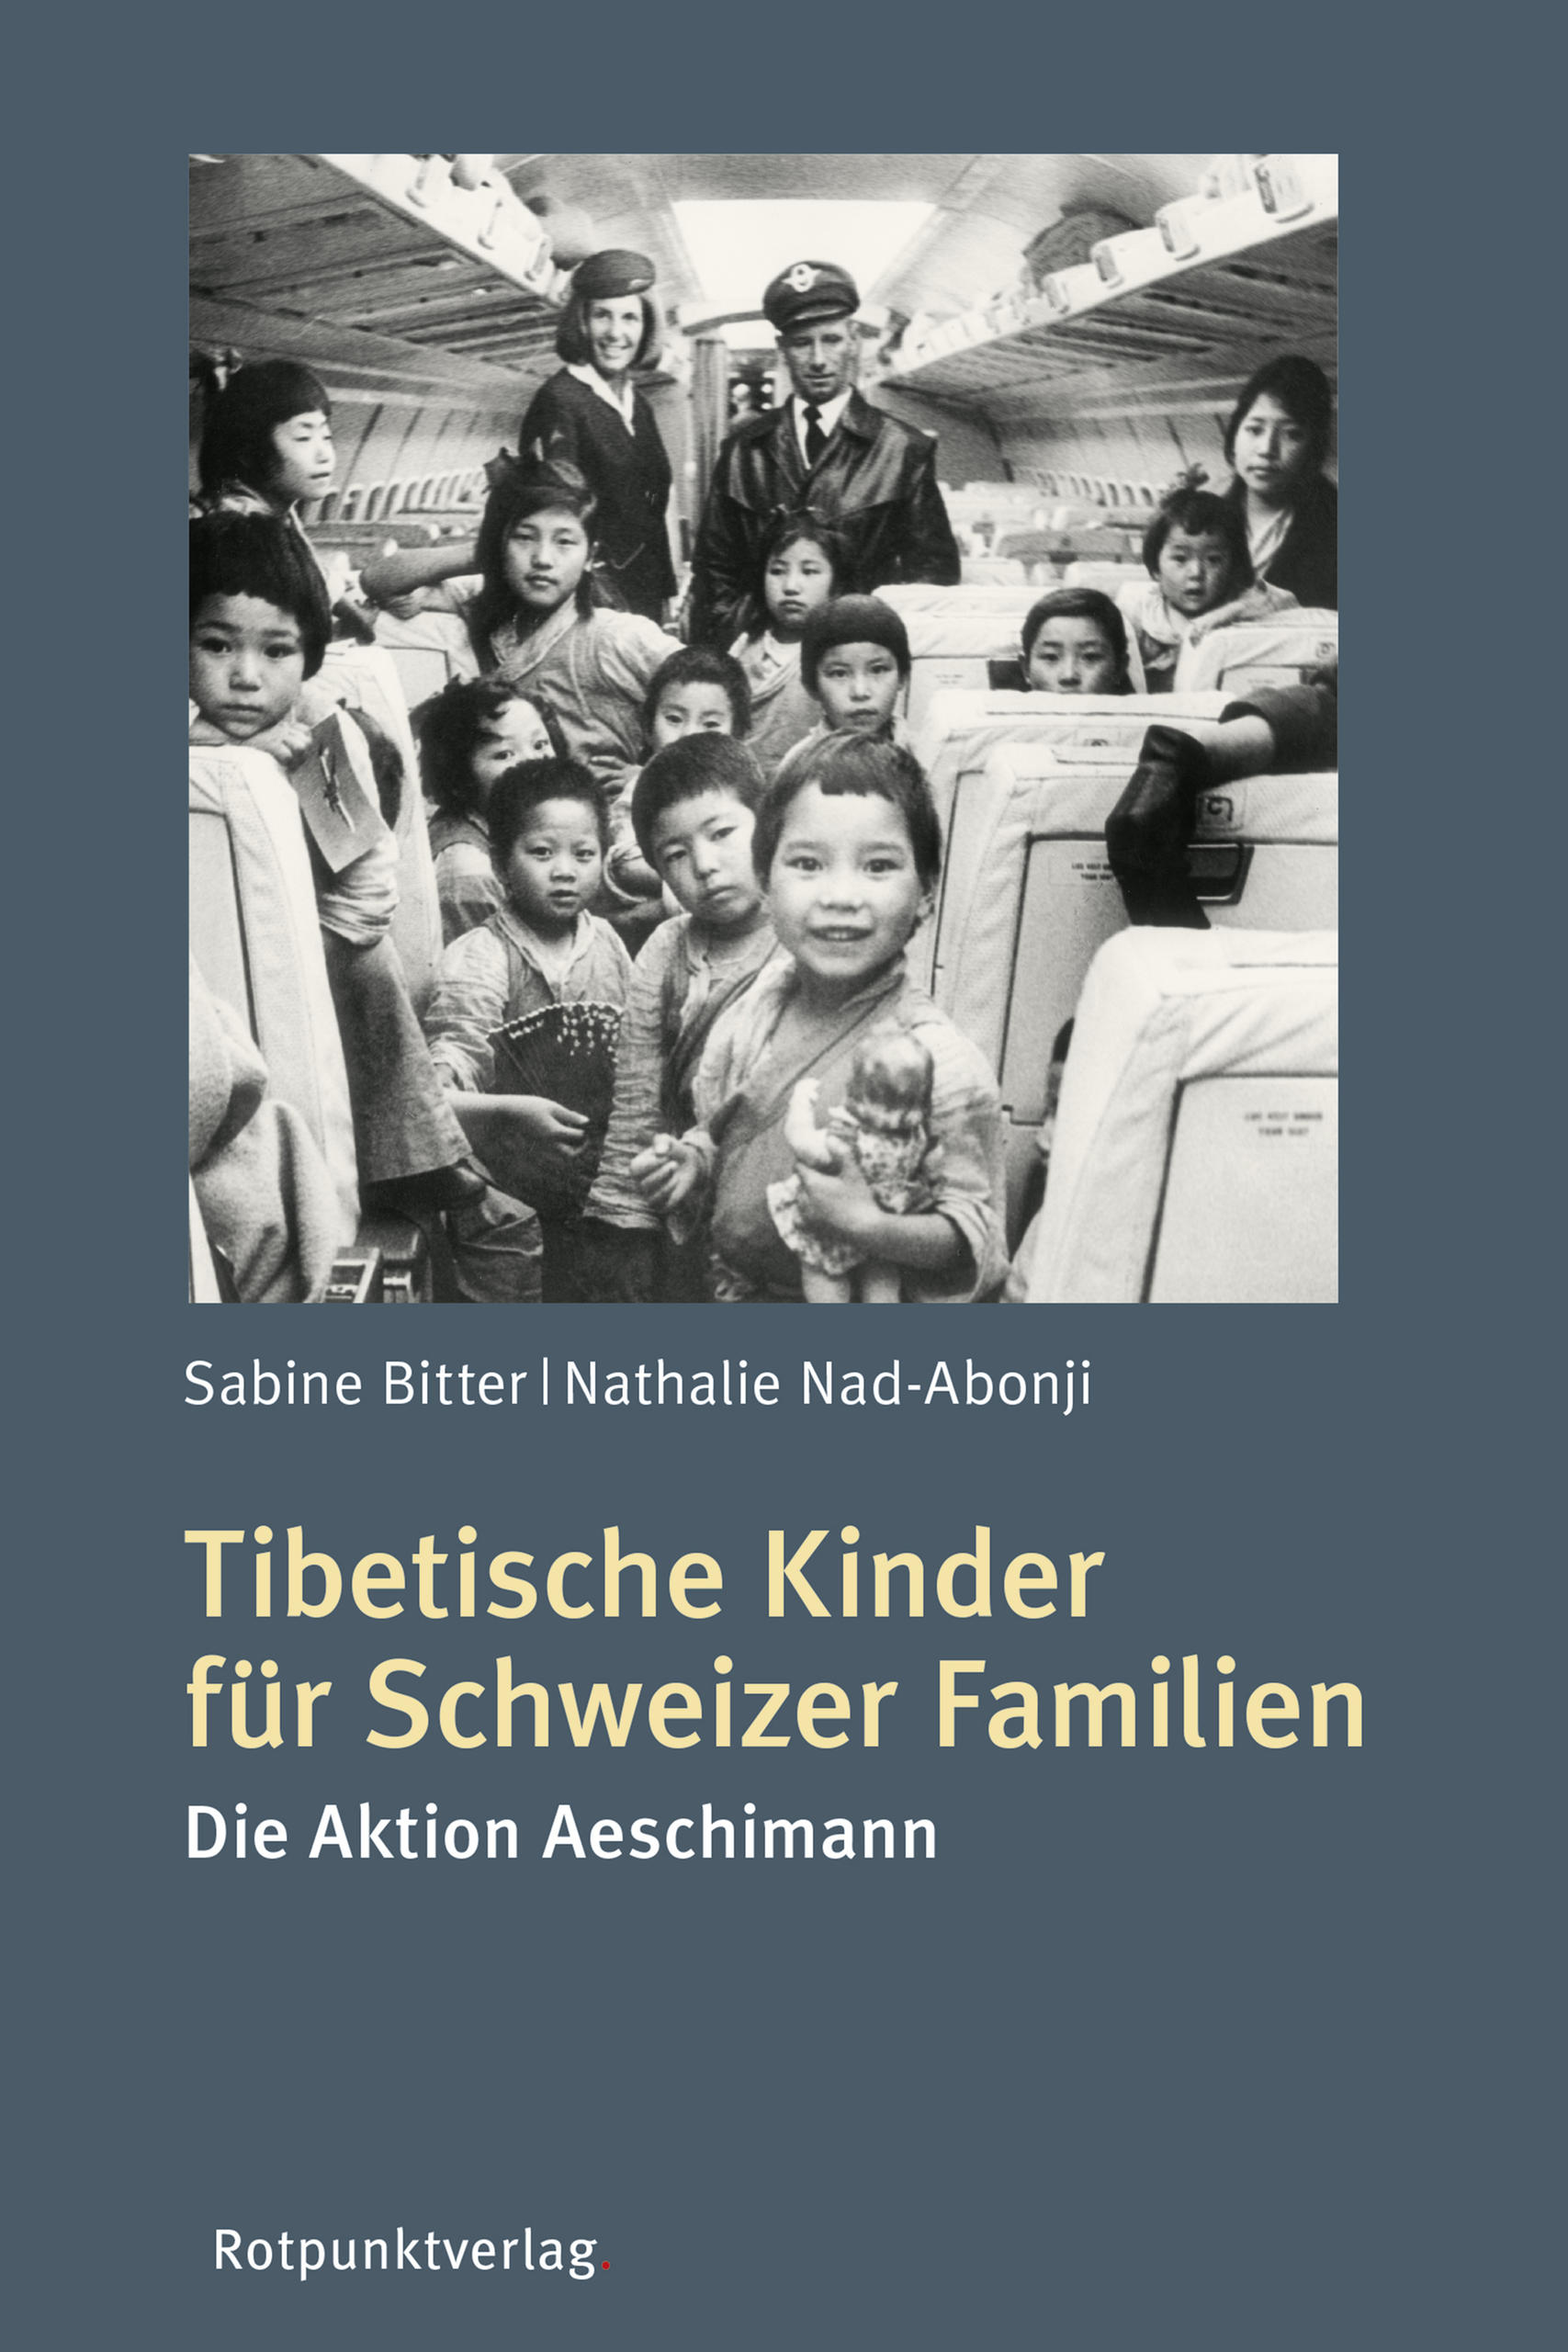 copertina del libro sui bambini tibetani in svizzera su cui si vedono dei bambini sorridenti in un treno